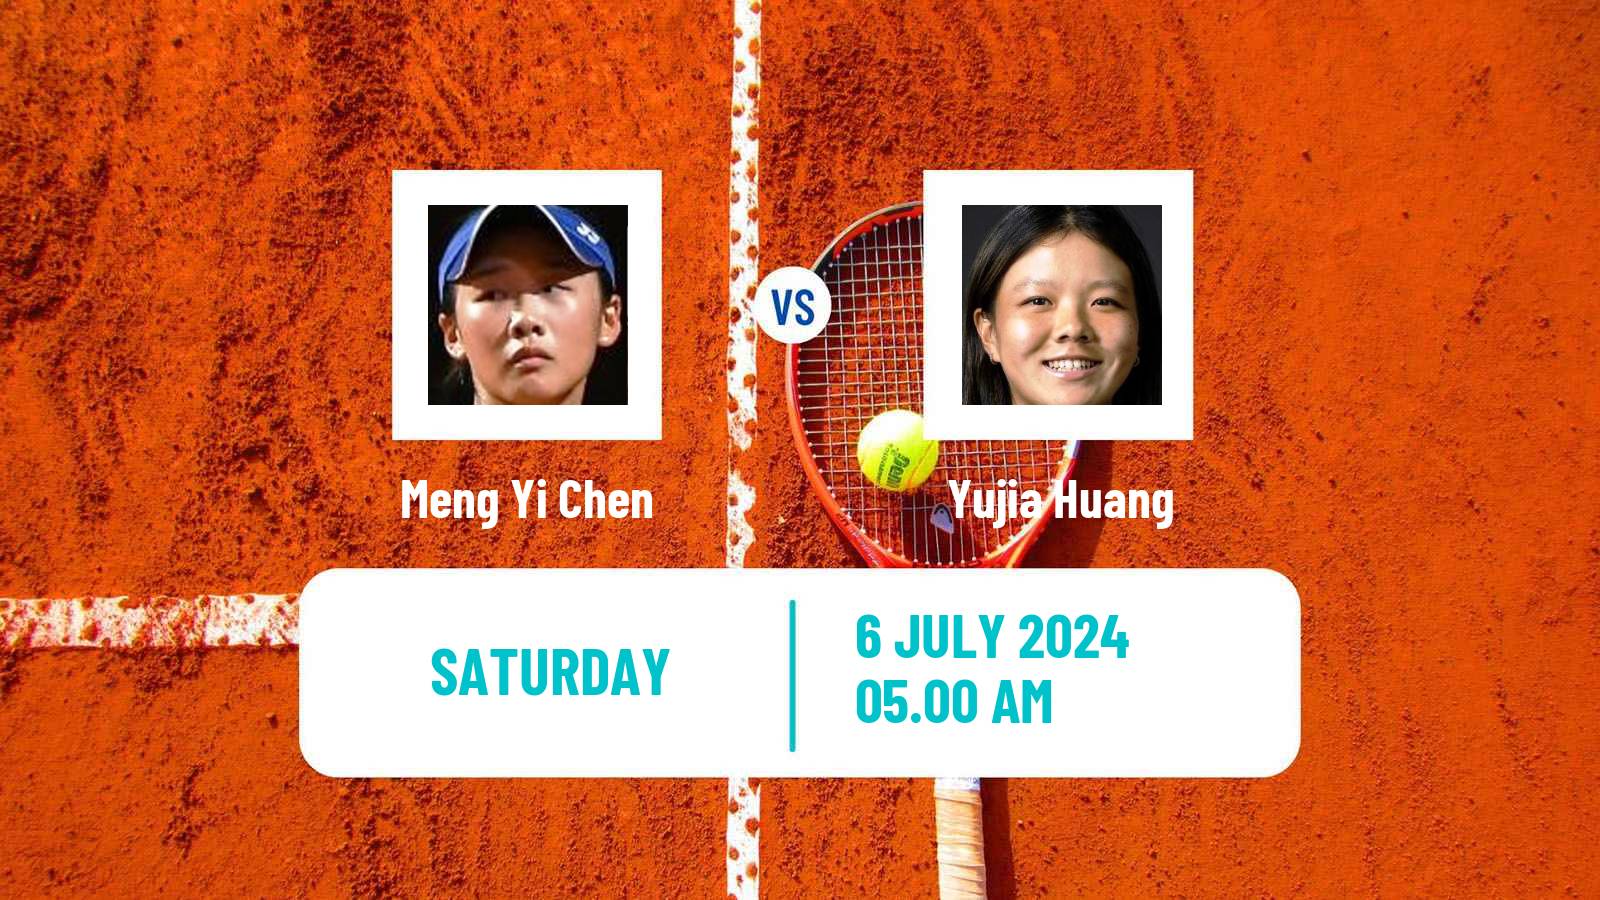 Tennis ITF W15 Tianjin 2 Women Meng Yi Chen - Yujia Huang